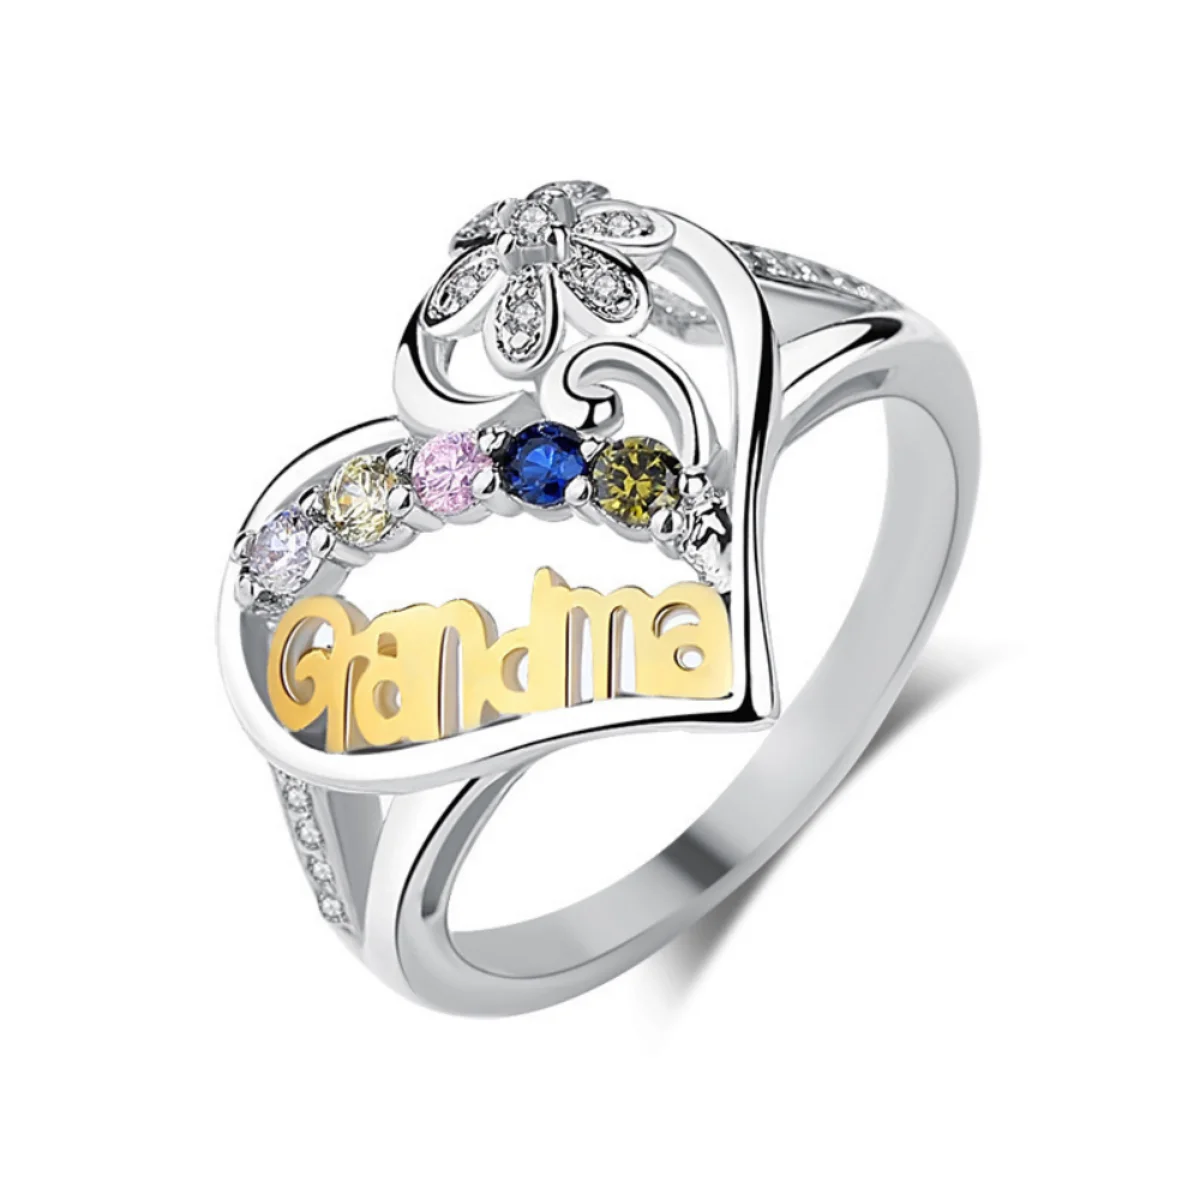 

Горячая Распродажа, кольцо с бриллиантами в форме Бабушки с надписью, Женское кольцо, праздничный подарок, оптовая продажа, самая низкая цена, $1, бесплатная доставка